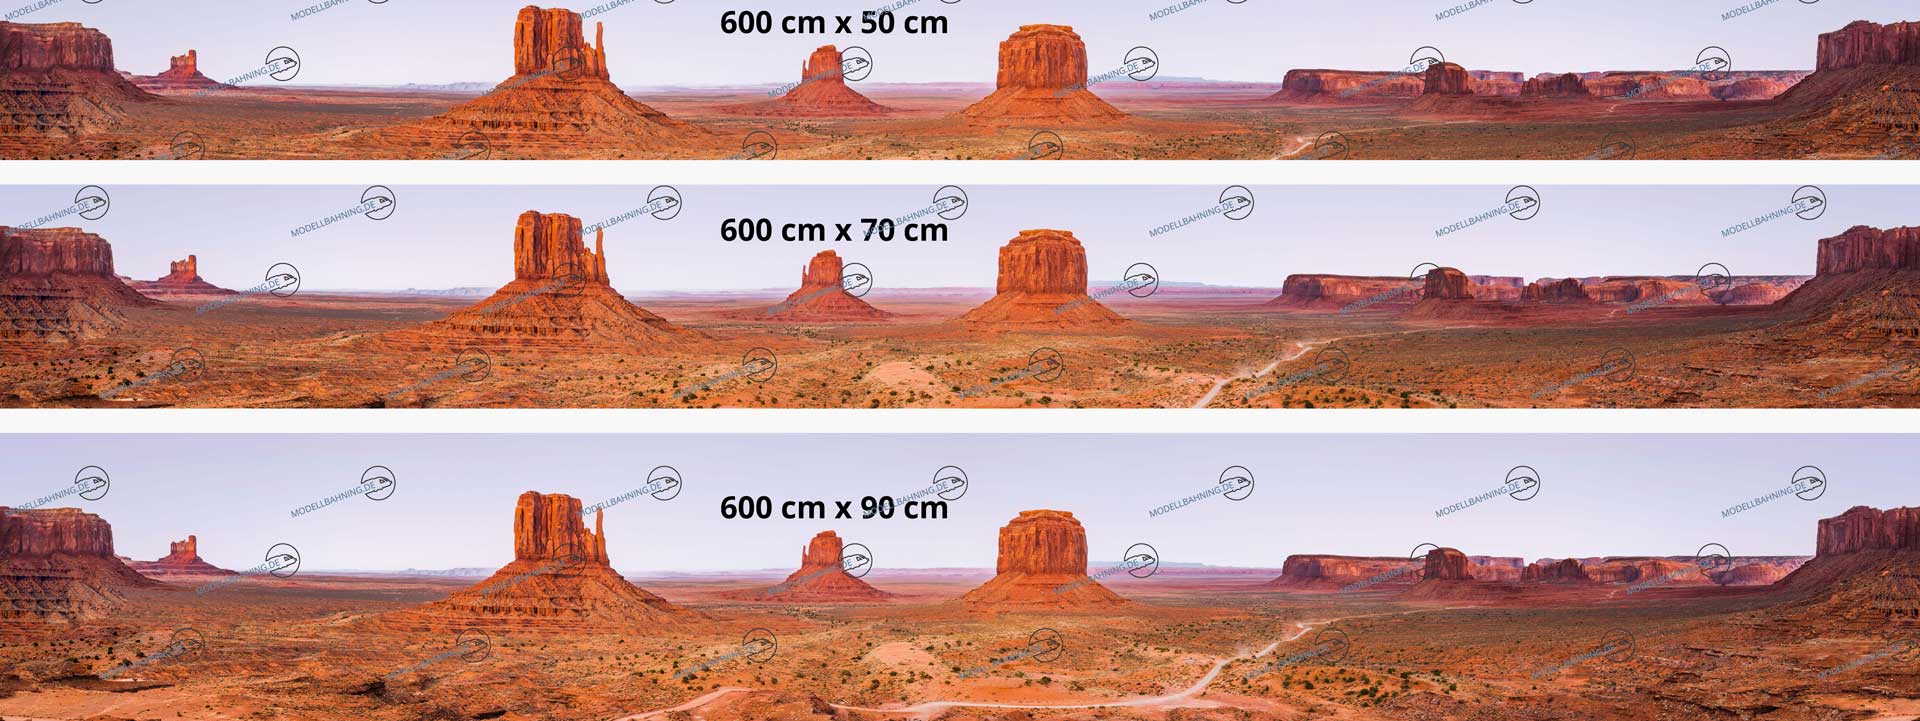 USA Modellbahnhintergrund "Monument Valley" 6 Meter, endlos! 2